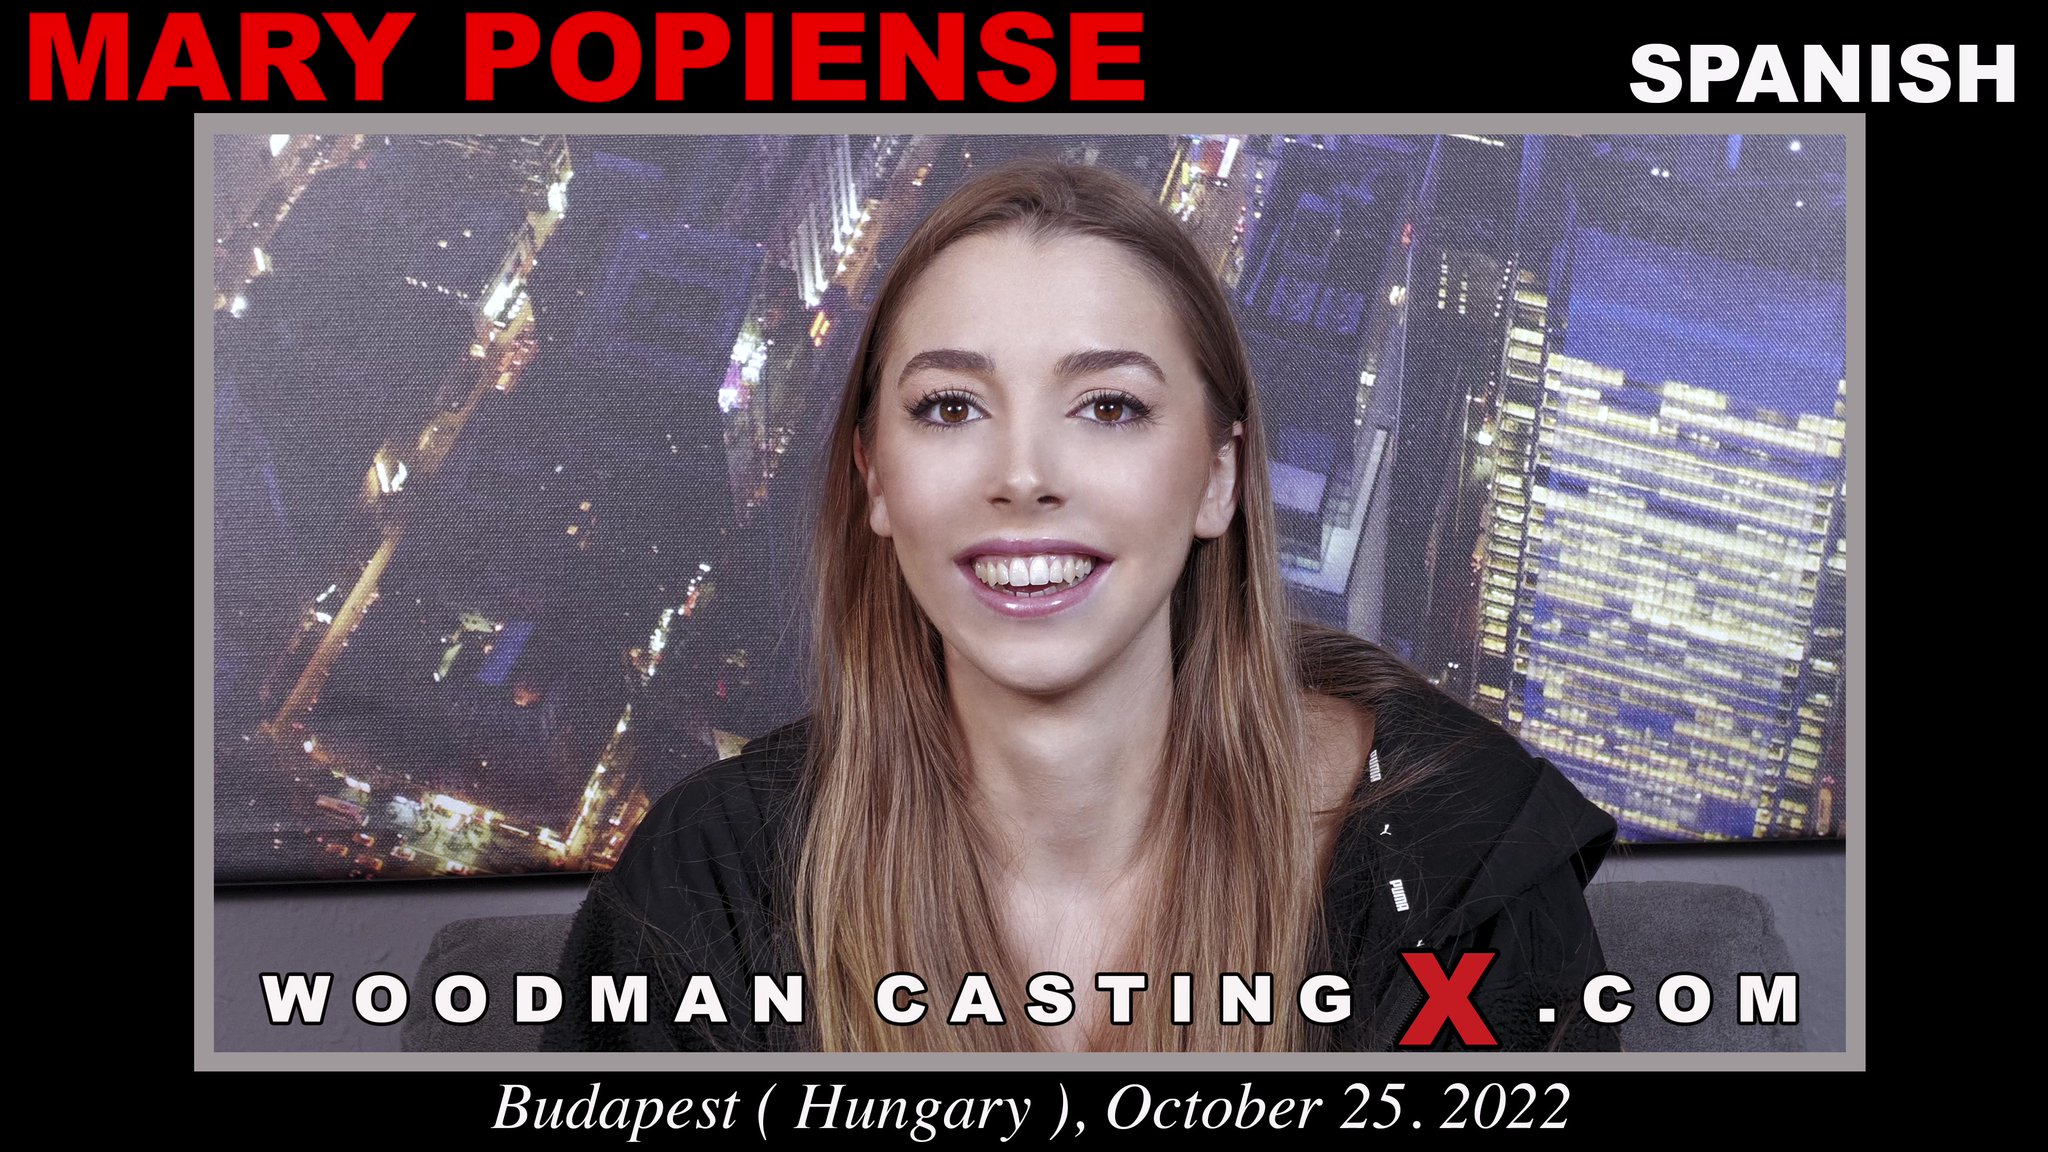 Tw Pornstars Woodman Casting X Twitter New Video Mary Popiense 513 Am 26 Oct 2022 